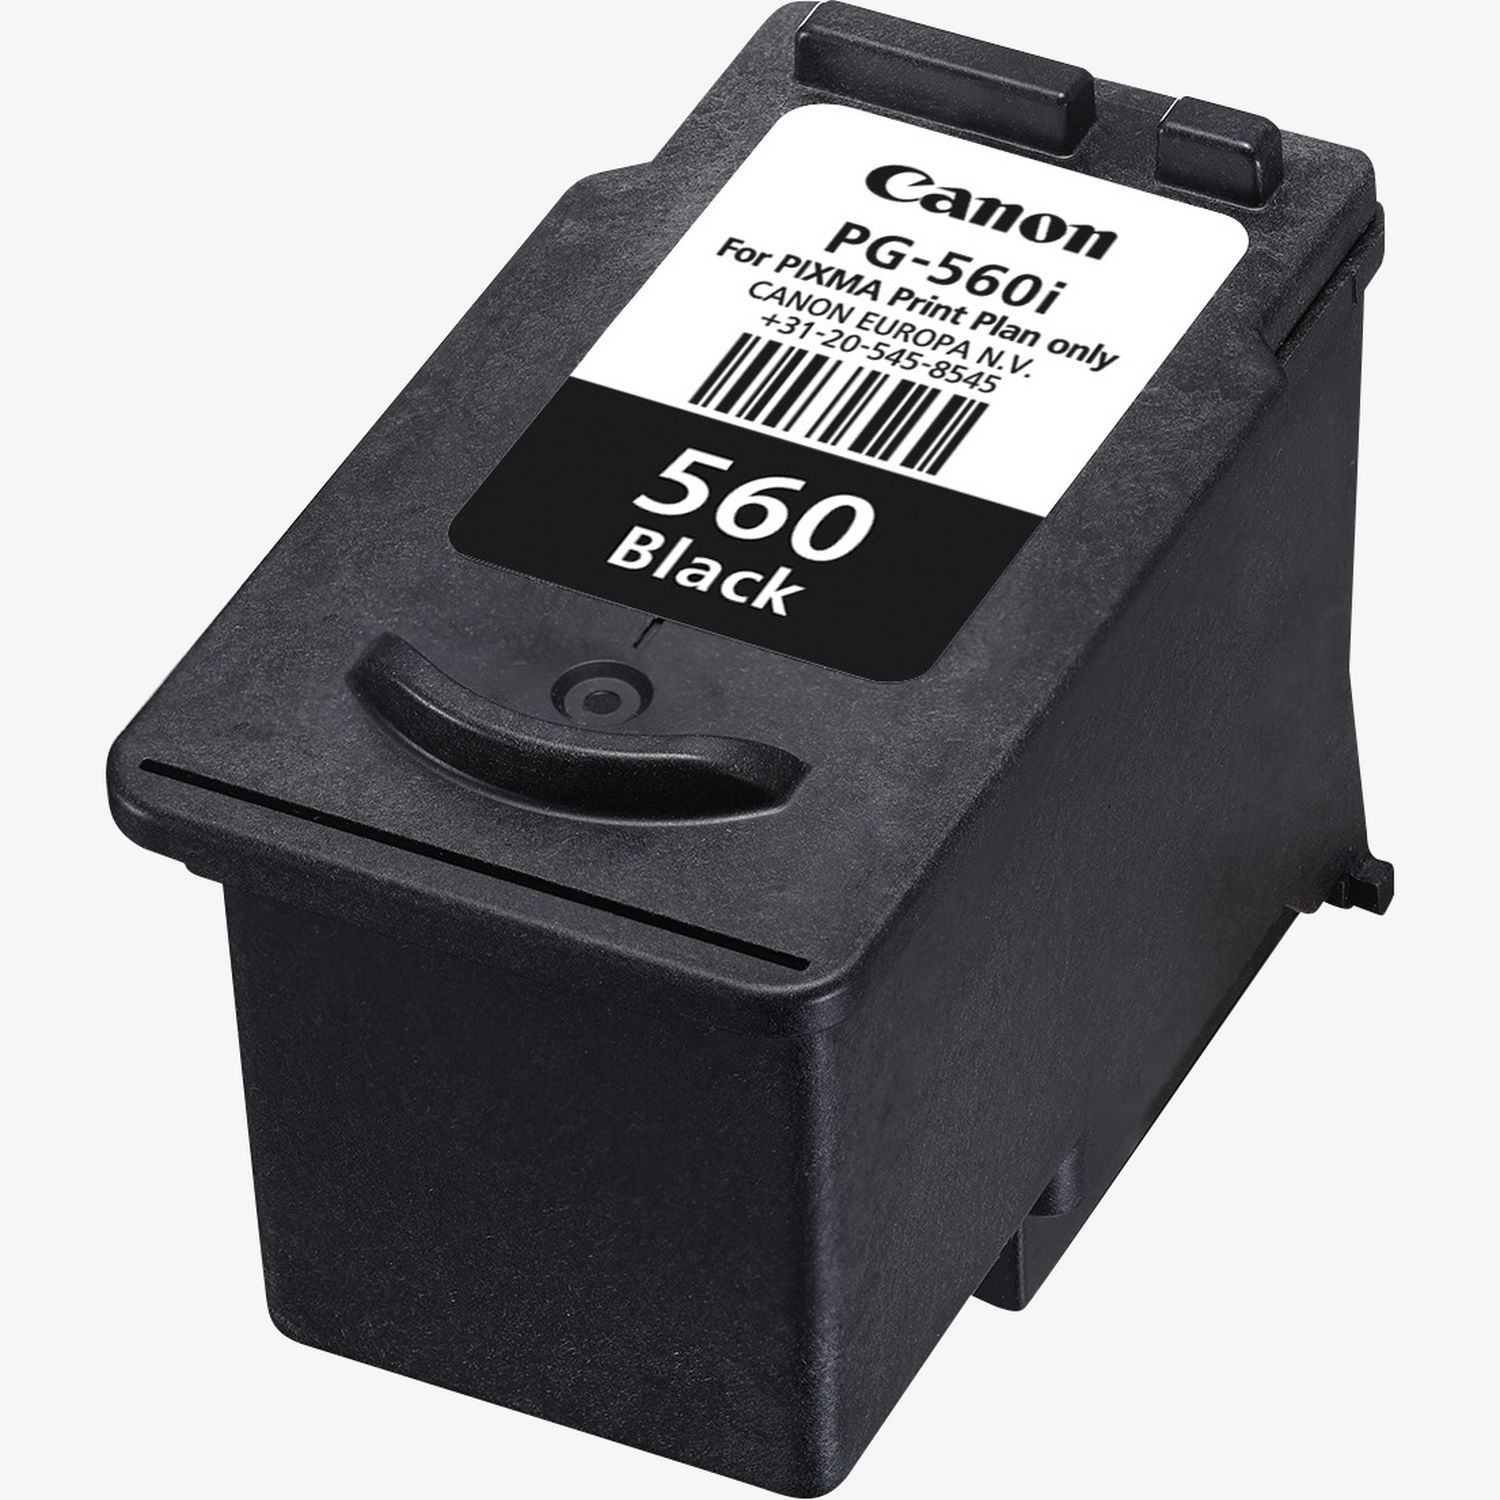 Canon PIXMA TS5350i Three-in-One Wireless Wi-Fi Printer - Black